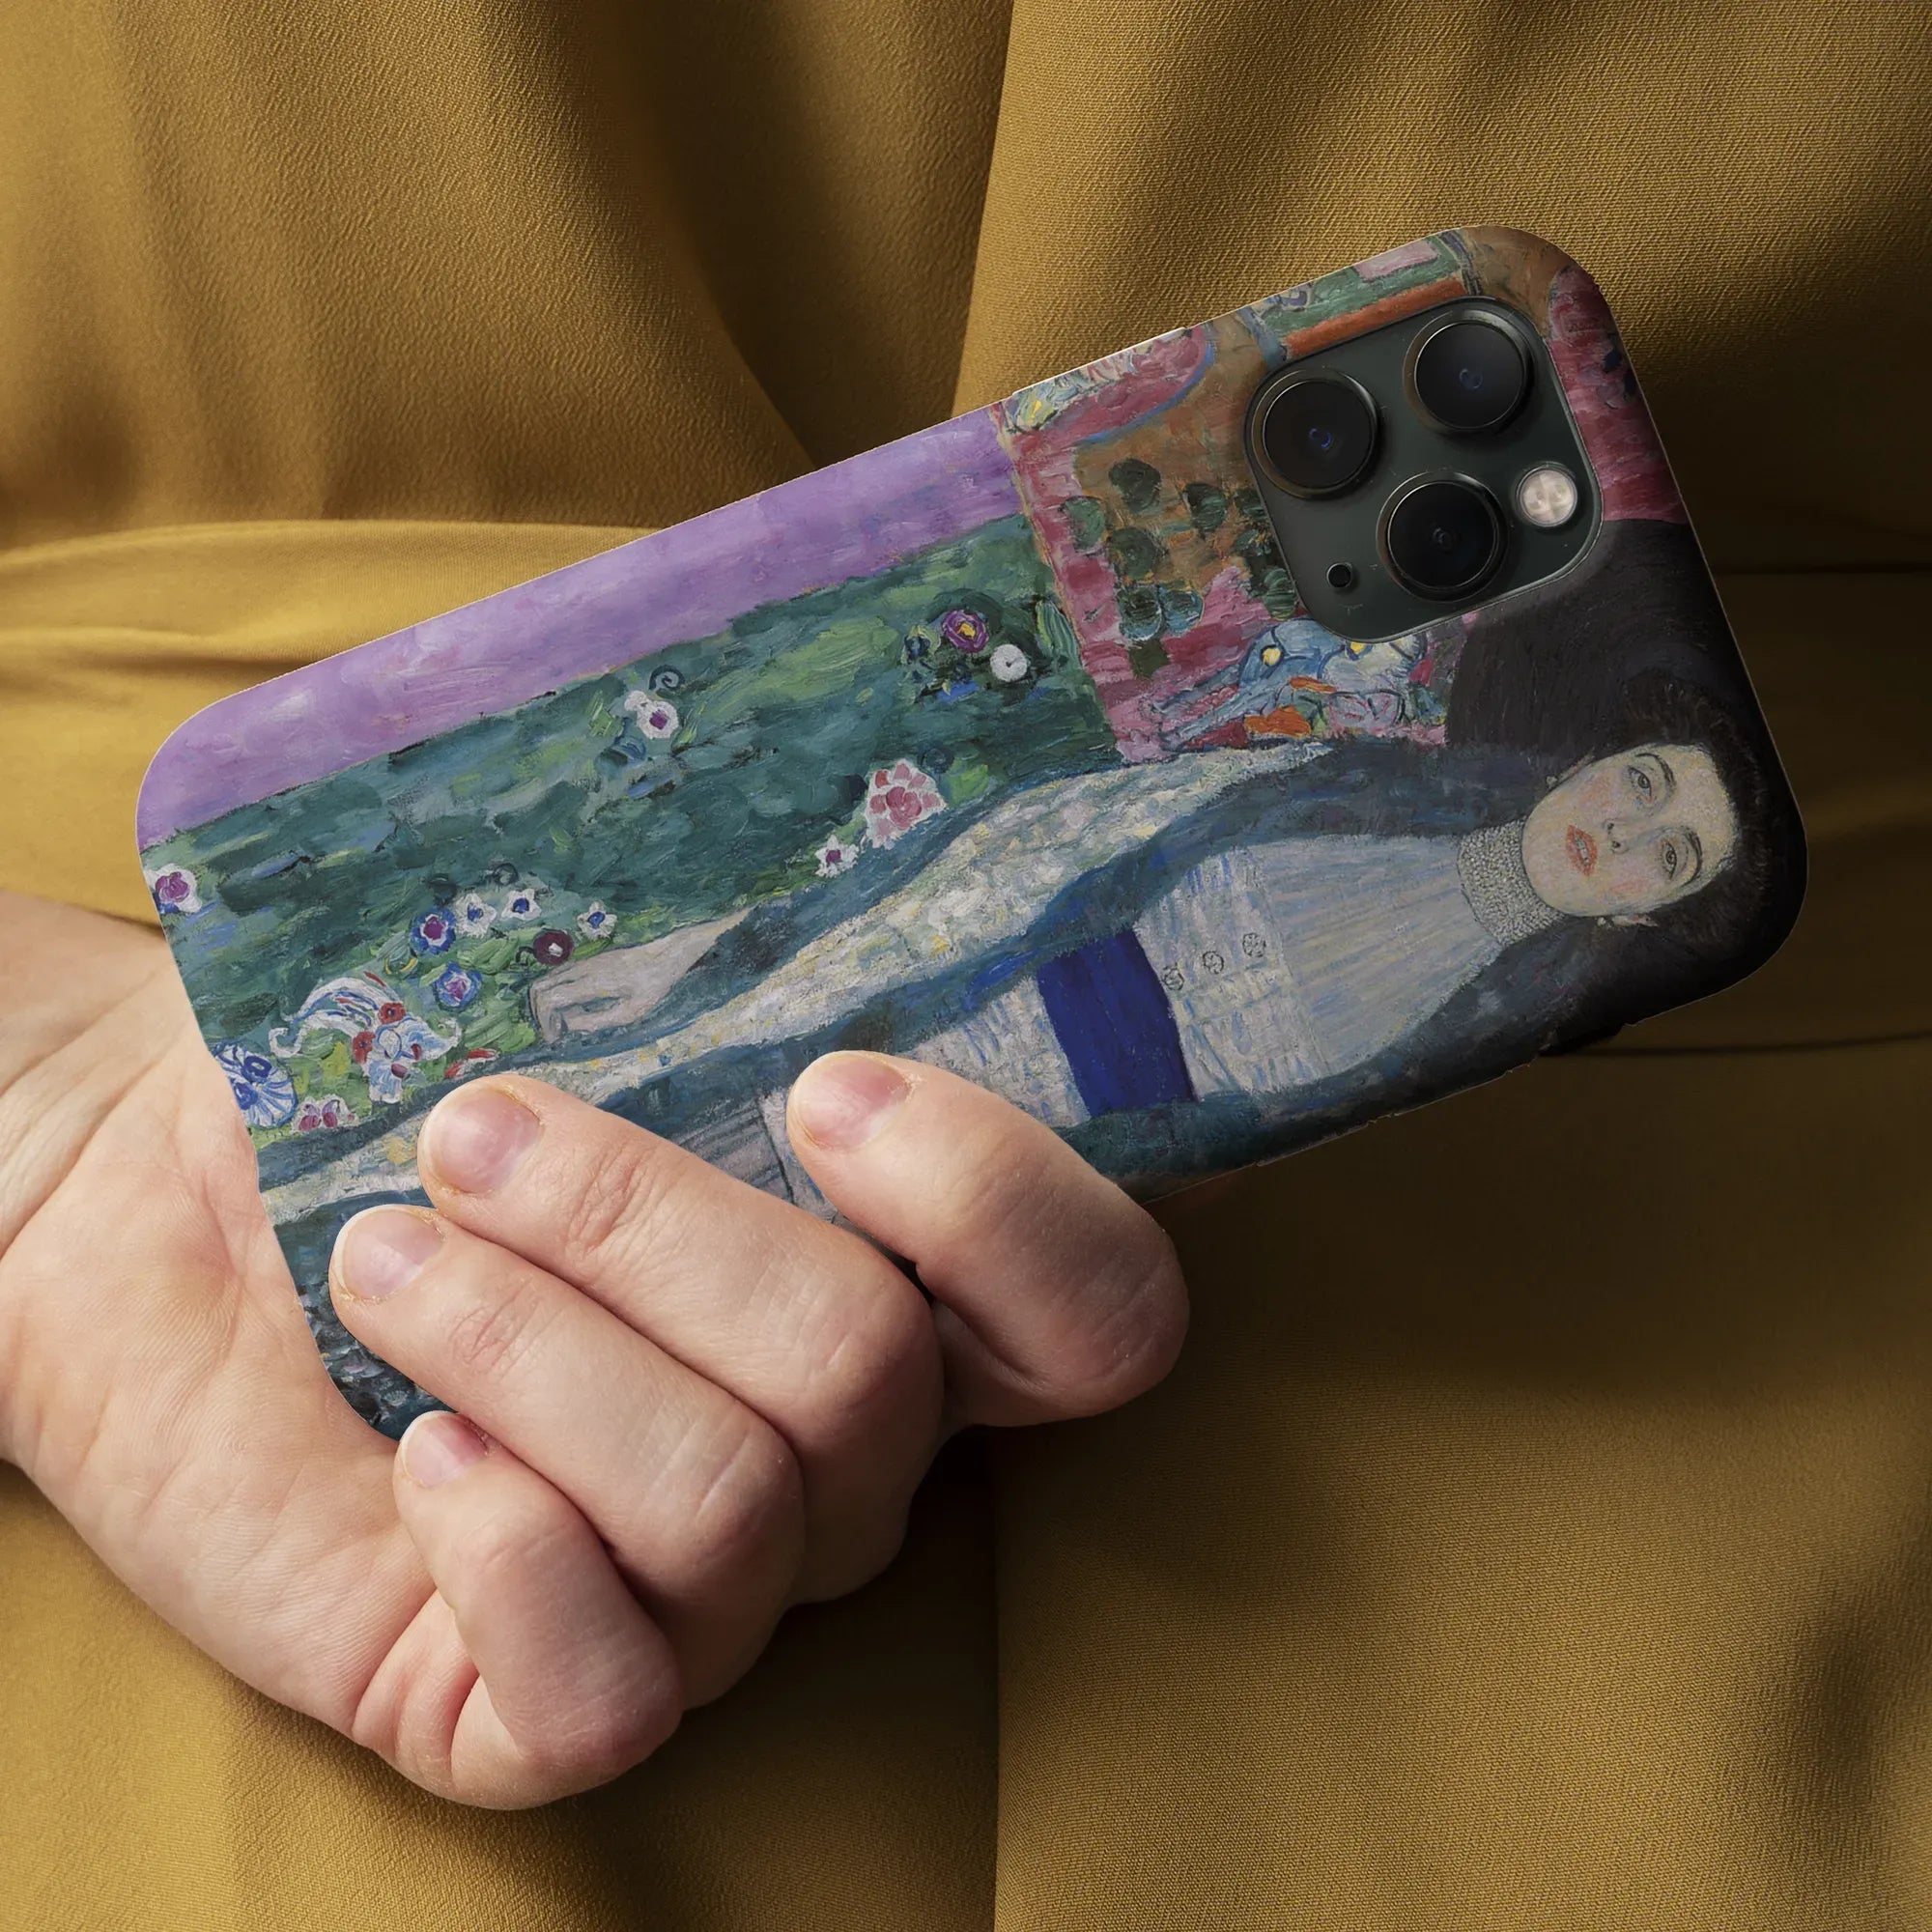 Adele Bloch-bauer - Gustav Klimt Portrait Art Phone Case - Mobile Phone Cases - Aesthetic Art